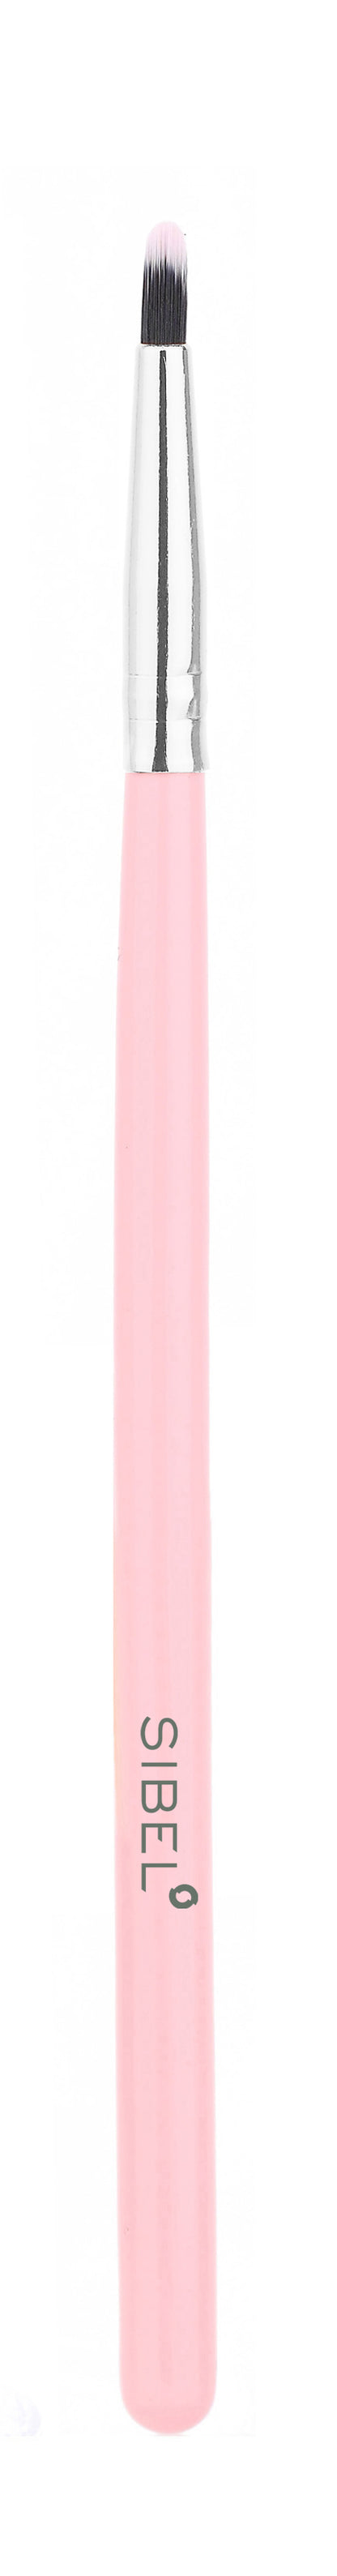 Pink Flamingo Cosmetics Brushes 11pcs